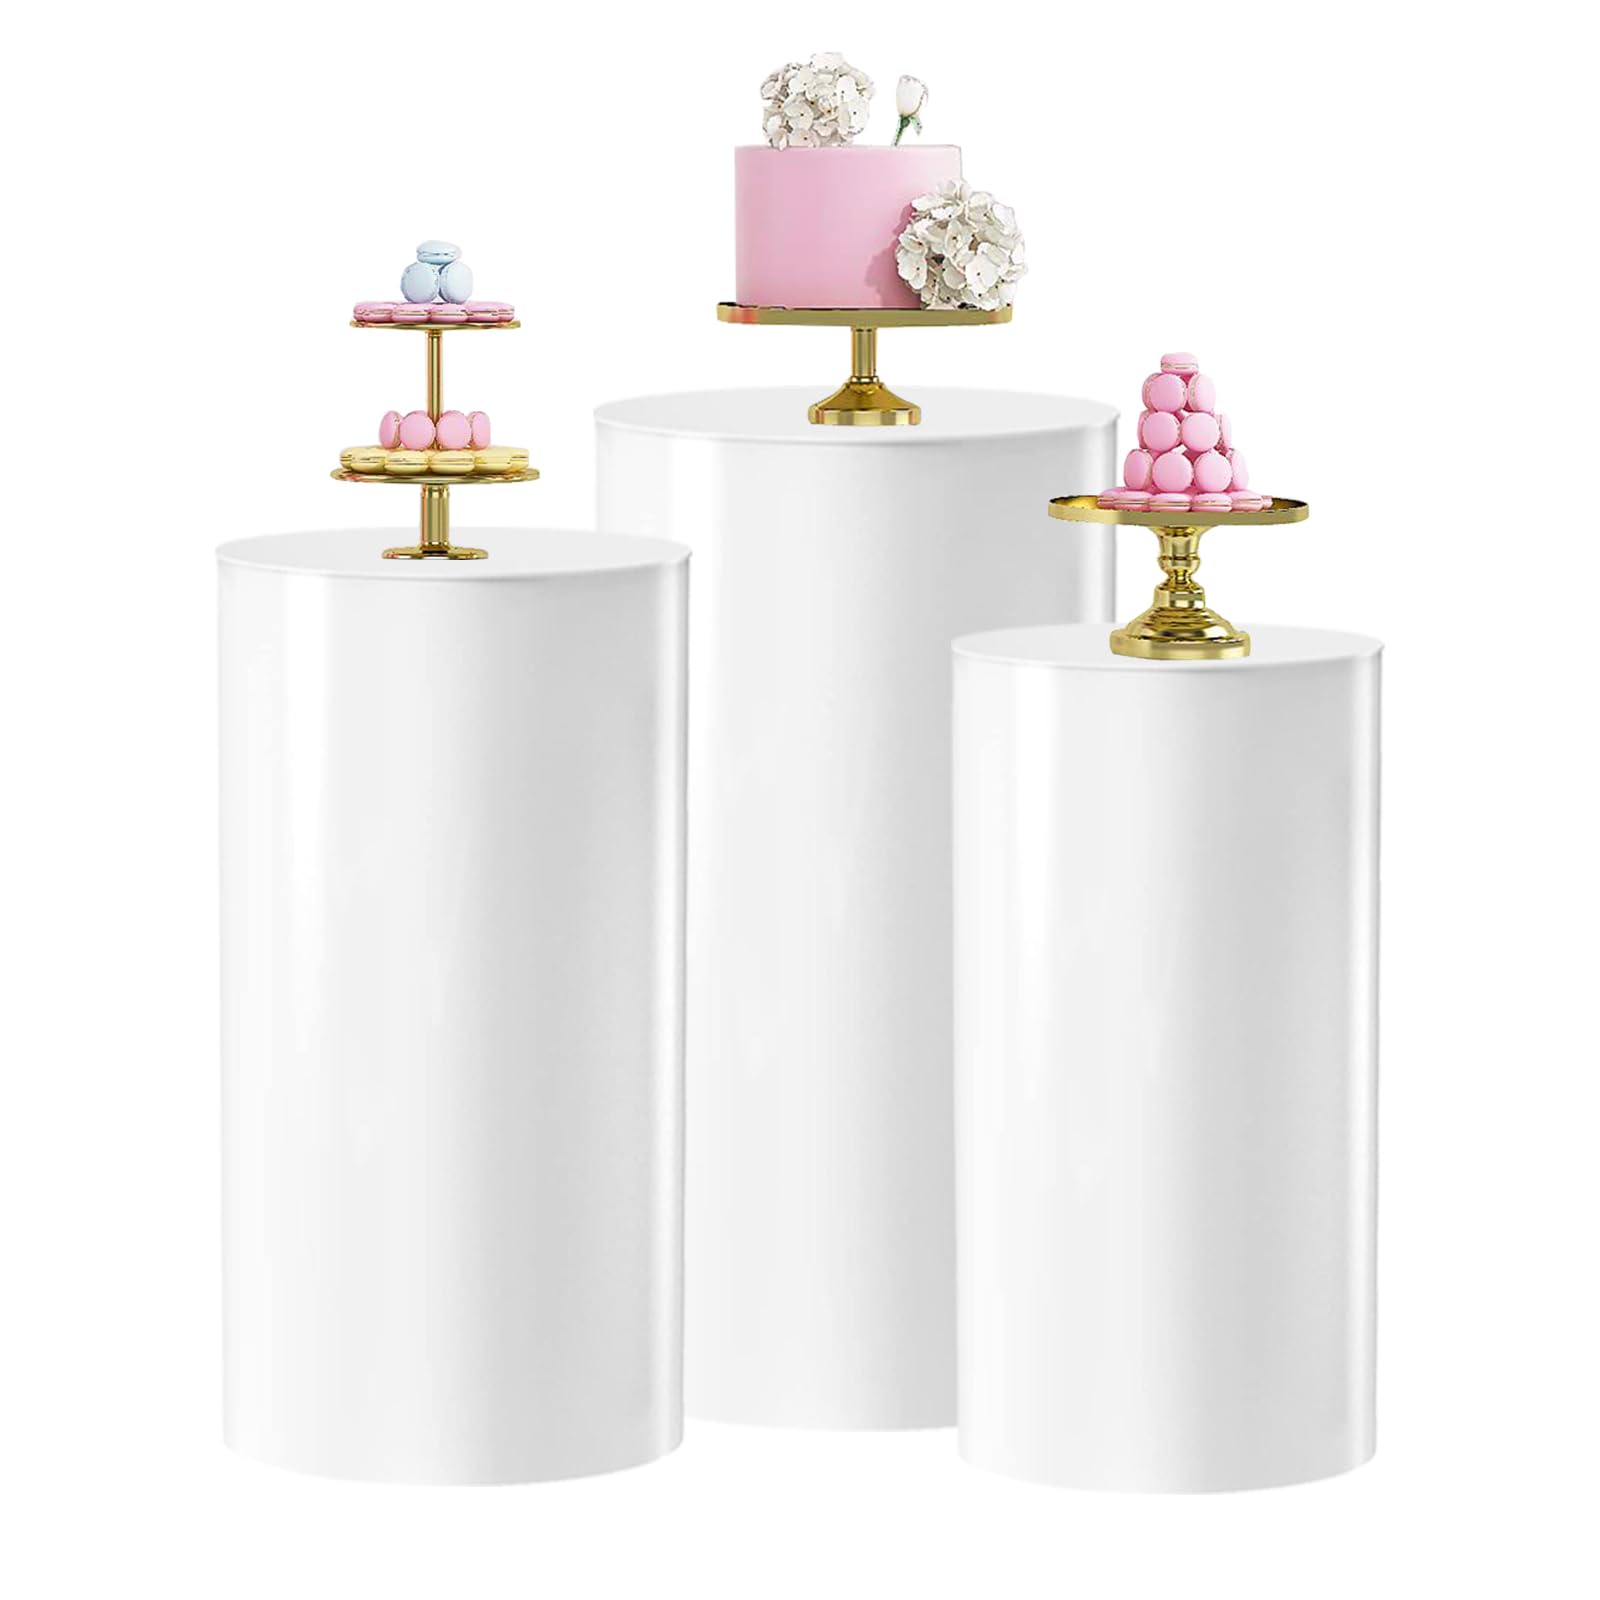 3PC Round Cylinder Pedestal Stands, Metal Pedestal Stand Cylinder Dessert Tables for Wedding Birthday Party, Wedding Centerpiece Birthday Babyshower Backdrop Decor,23.6"/21.6"/19.7" high (White-3PCS)